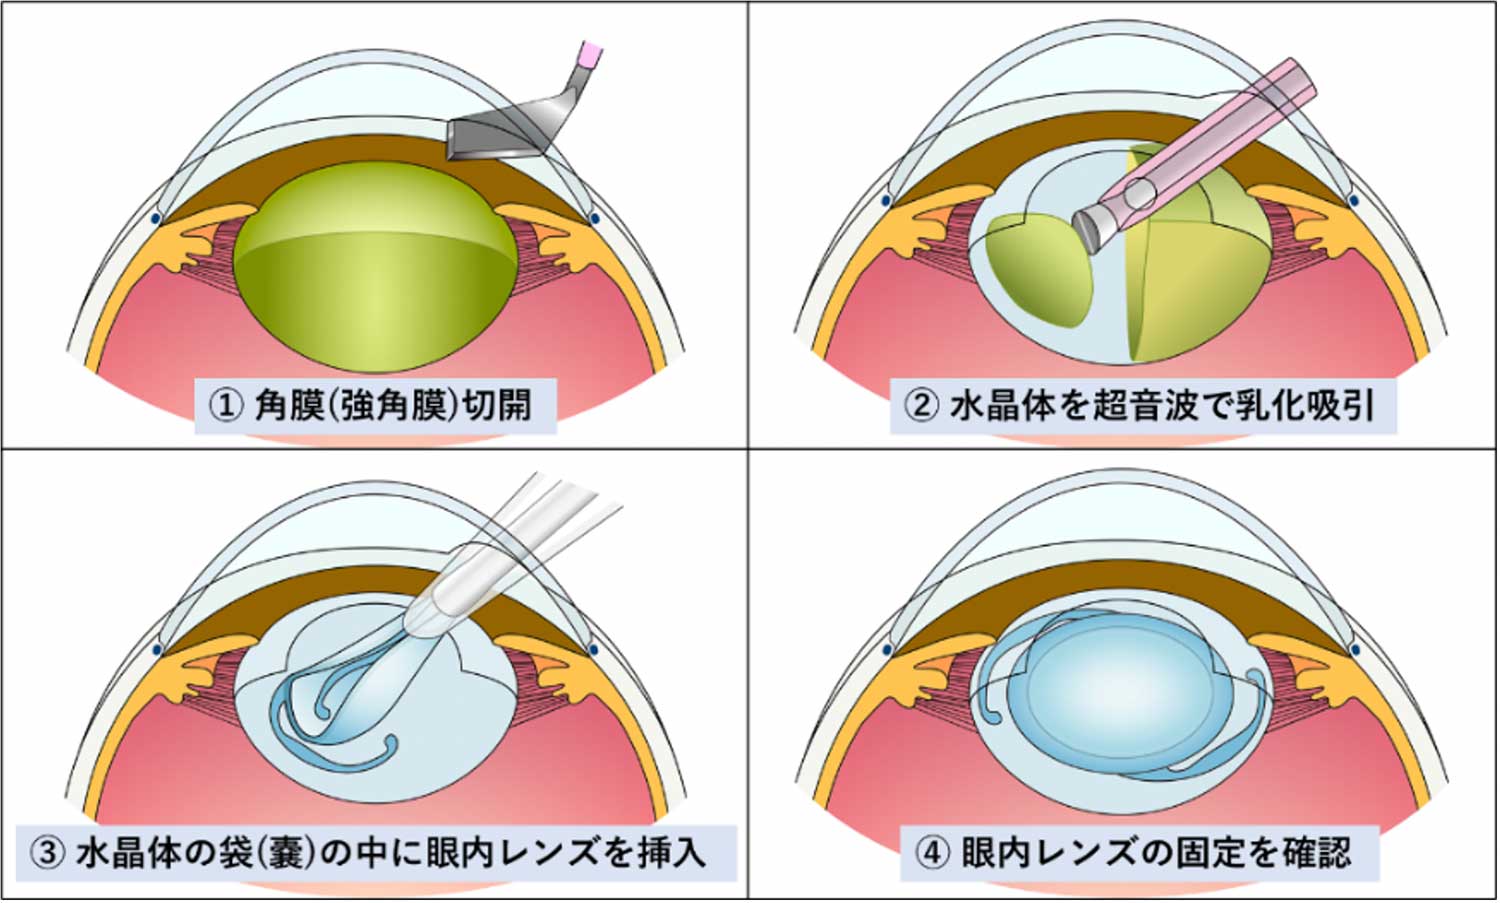 網膜 剥離 について 正しい の は どれ か